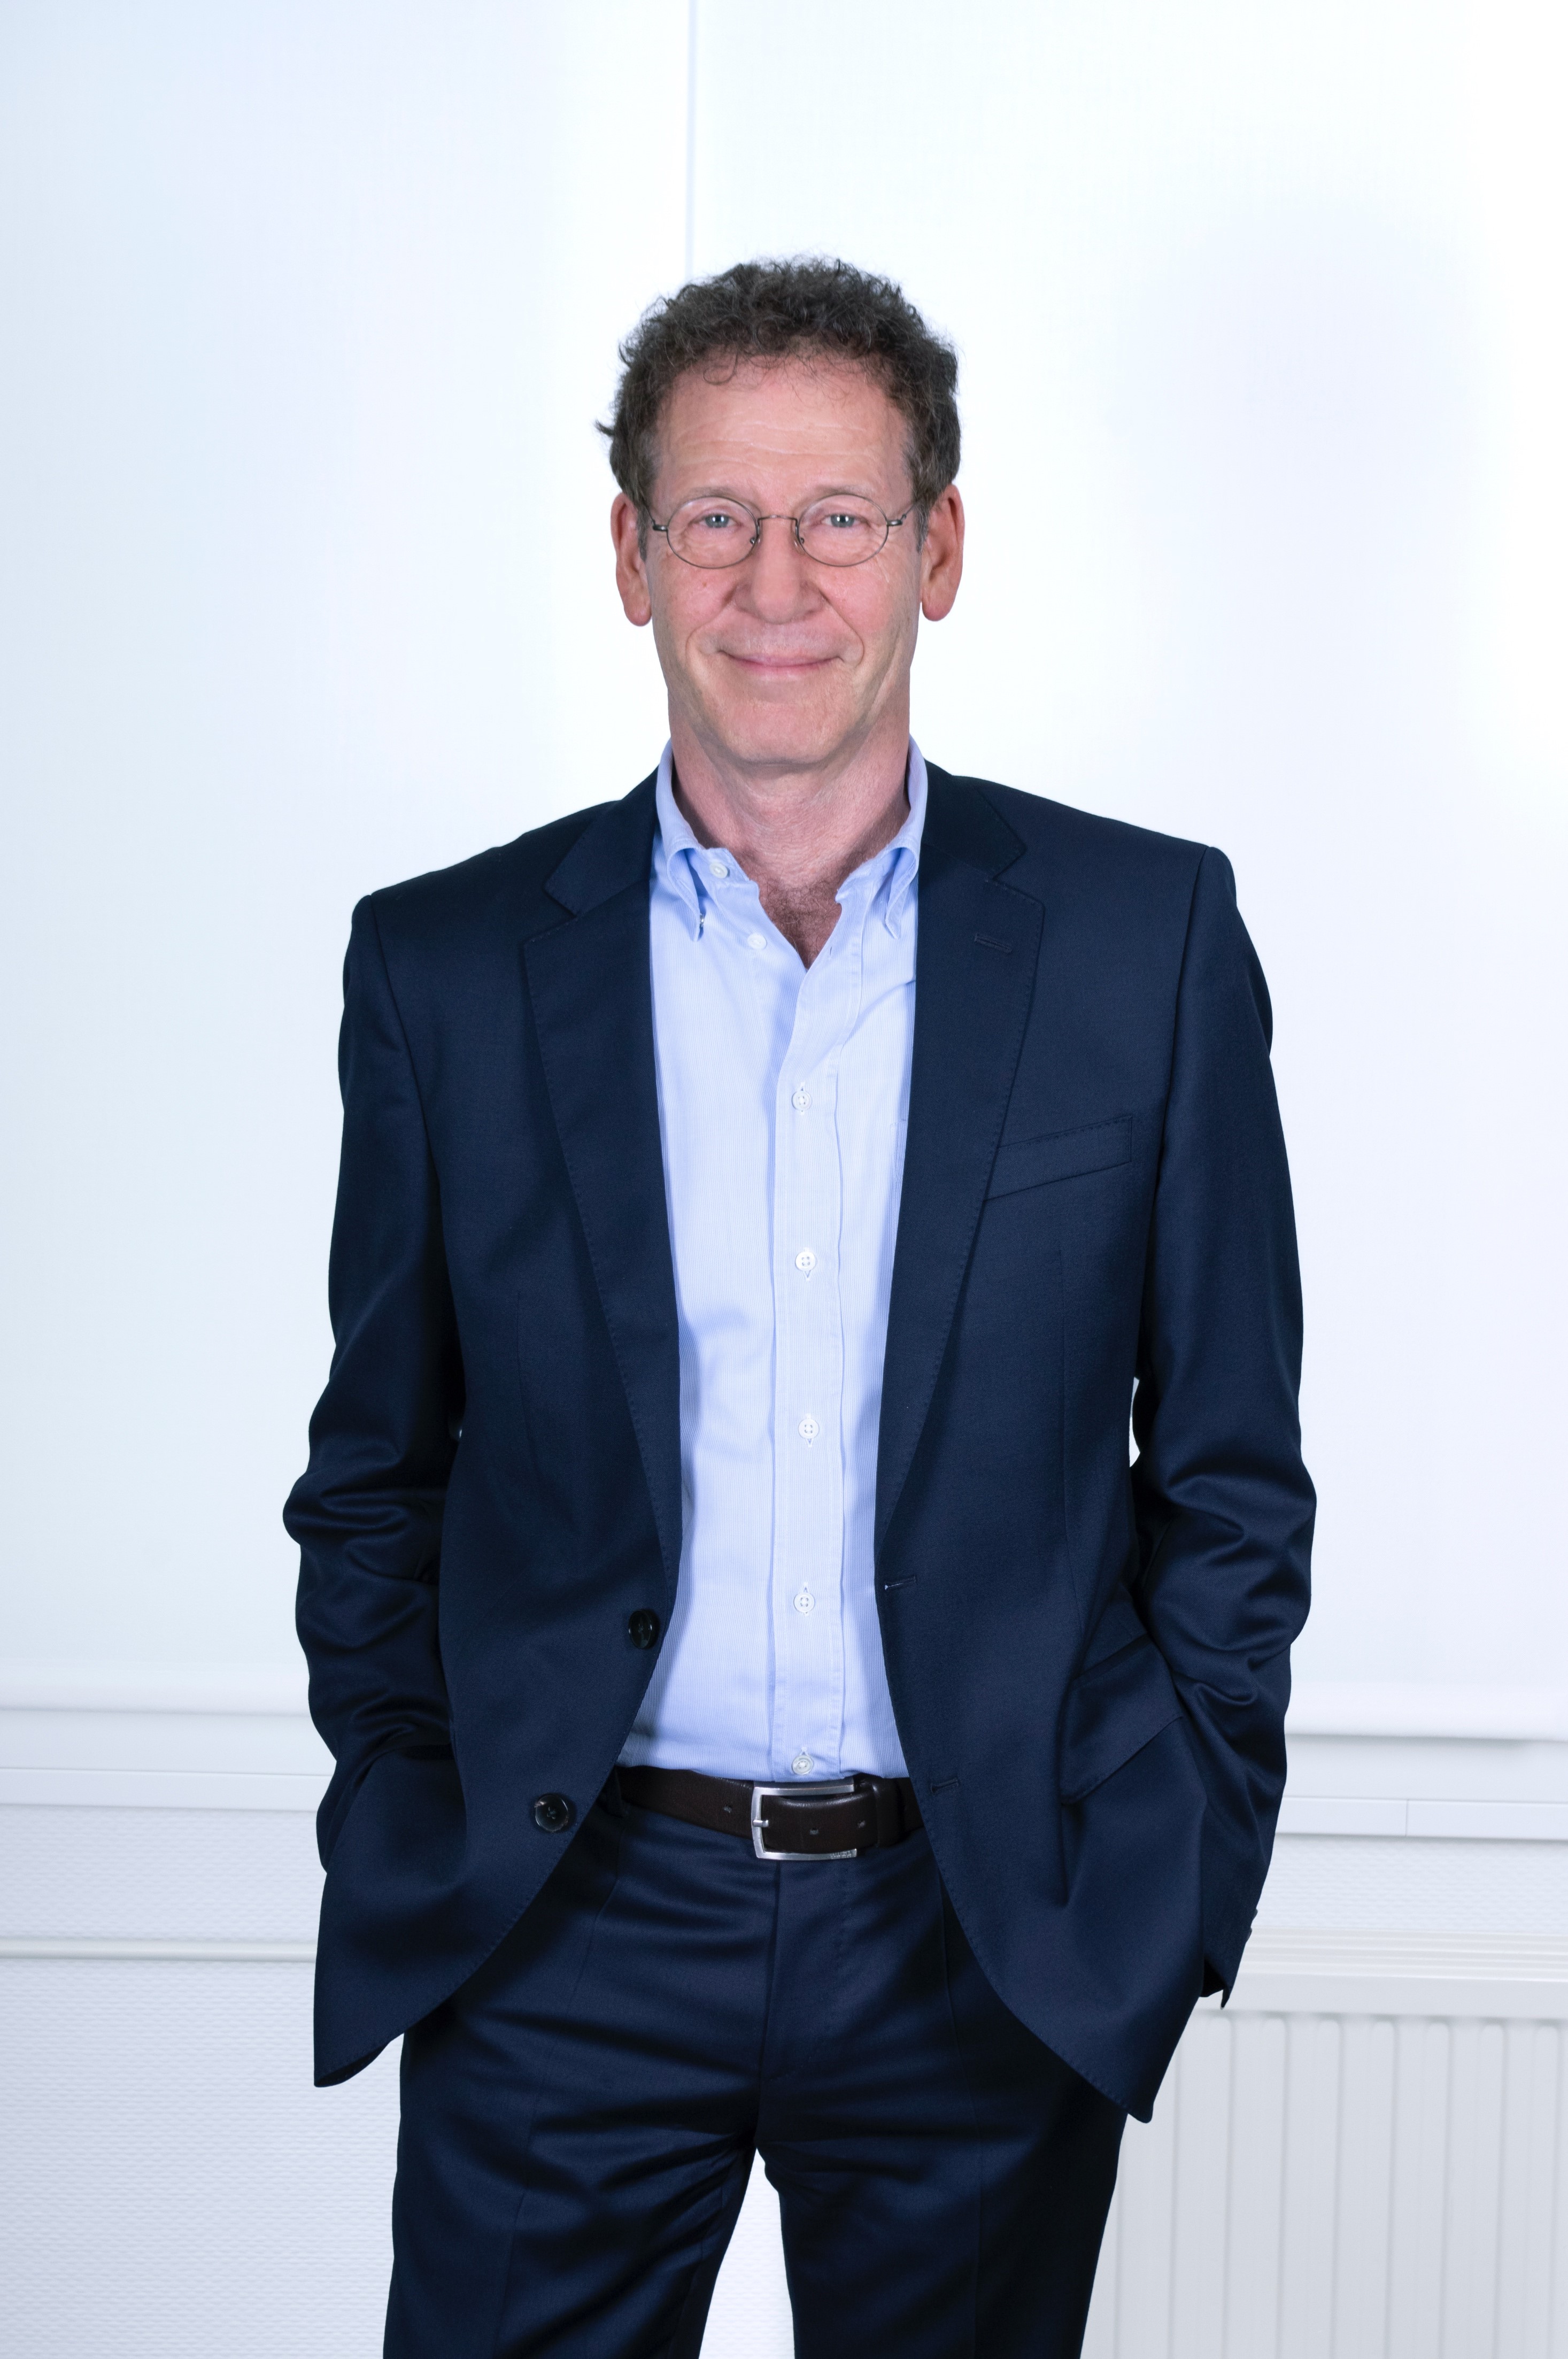 Foto von Wolfgang Kallweit, Geschäftsführender Gesellschafter von PropertyExpert, lächelnd im Anzug, mit den Händen in den Hosentaschen